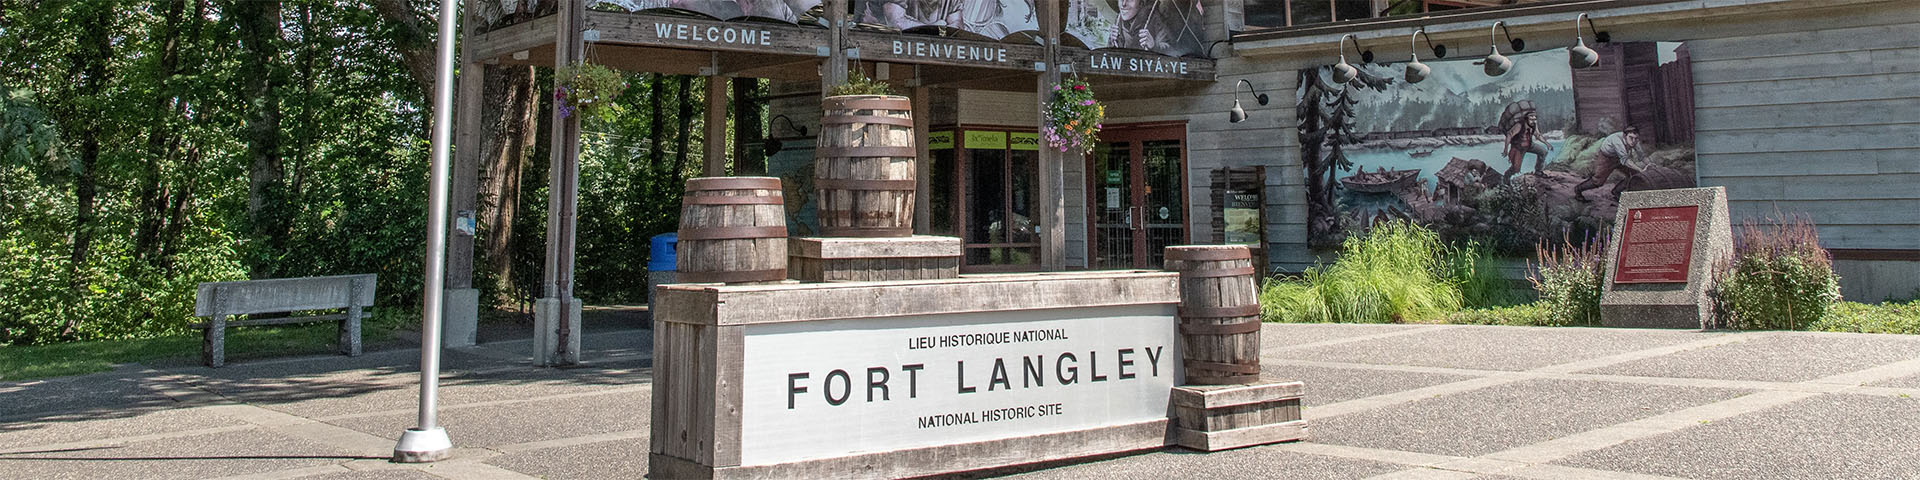 Entrée du lieu historique national du Fort Langley par le centre d'accueil.